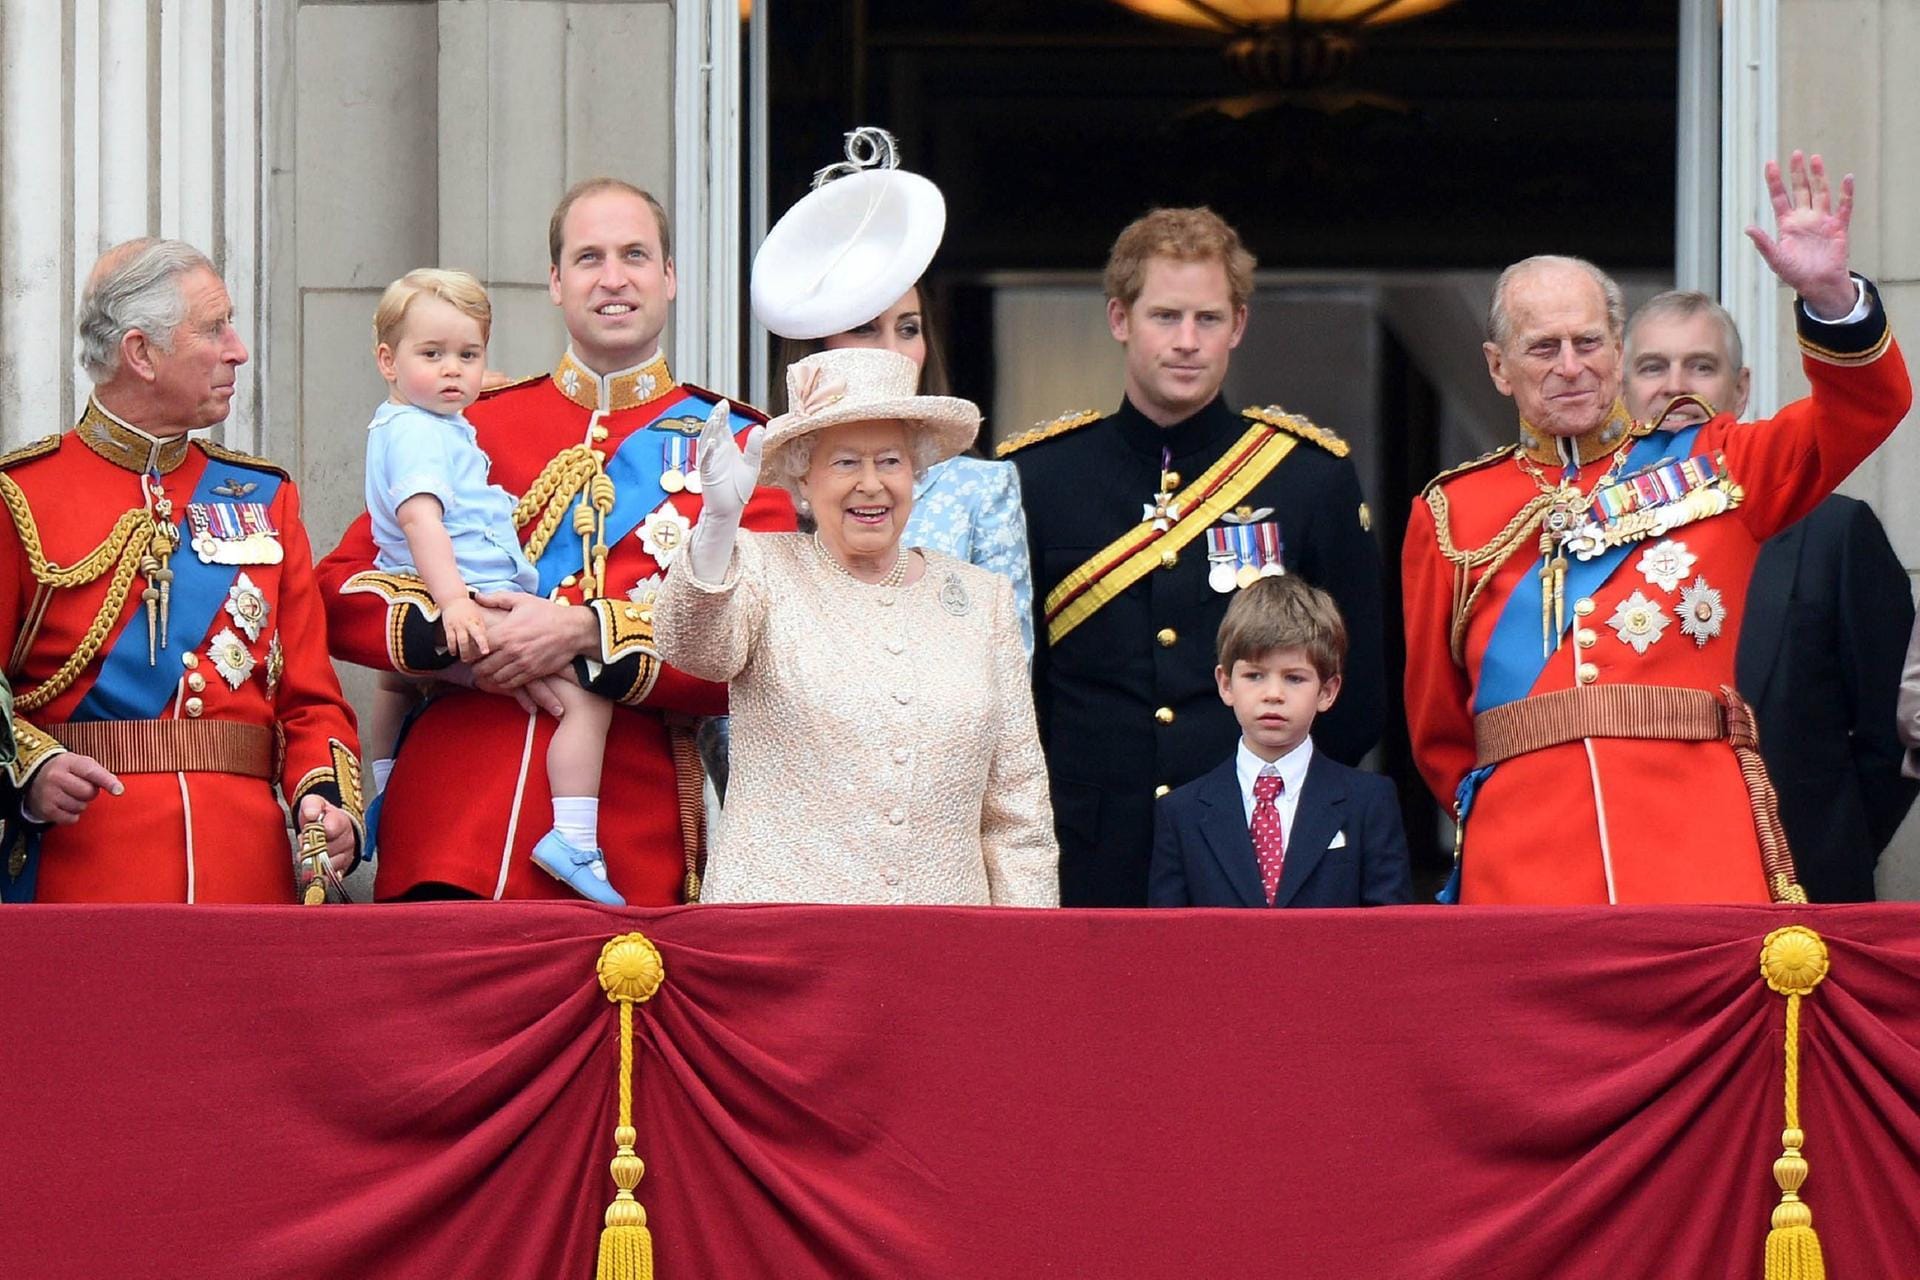 2015: Die Queen winkt strahlend ins Publikum. Links von ihr stehen ihr Sohn Prinz Charles und ihr Enkel Prinz William, der seinen Sohn Prinz George auf dem Arm hält. Hinter ihr steht Herzogin Kate. Rechts von der Monarchin sieht man ihren Enkel Prinz Harry, Prinz James Mountbatten-Windsor, ihren Mann Prinz Philip und ihren Sohn Prinz Andrew.